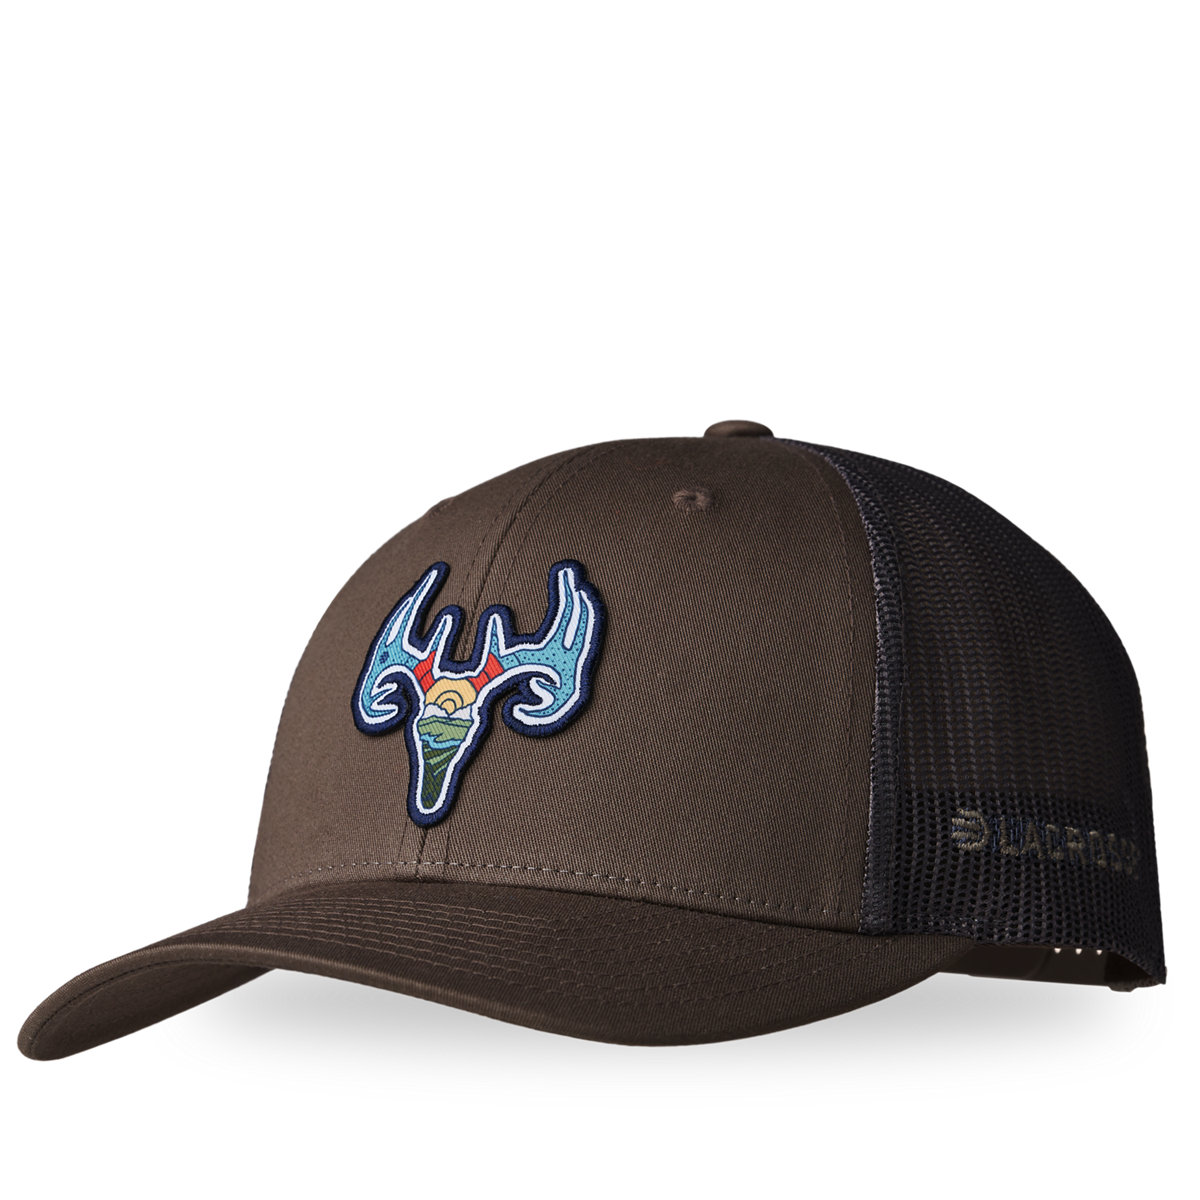 LaCrosse Footwear - LaCrosse Brown Trucker Choc Deer - Chip/Grey Hat